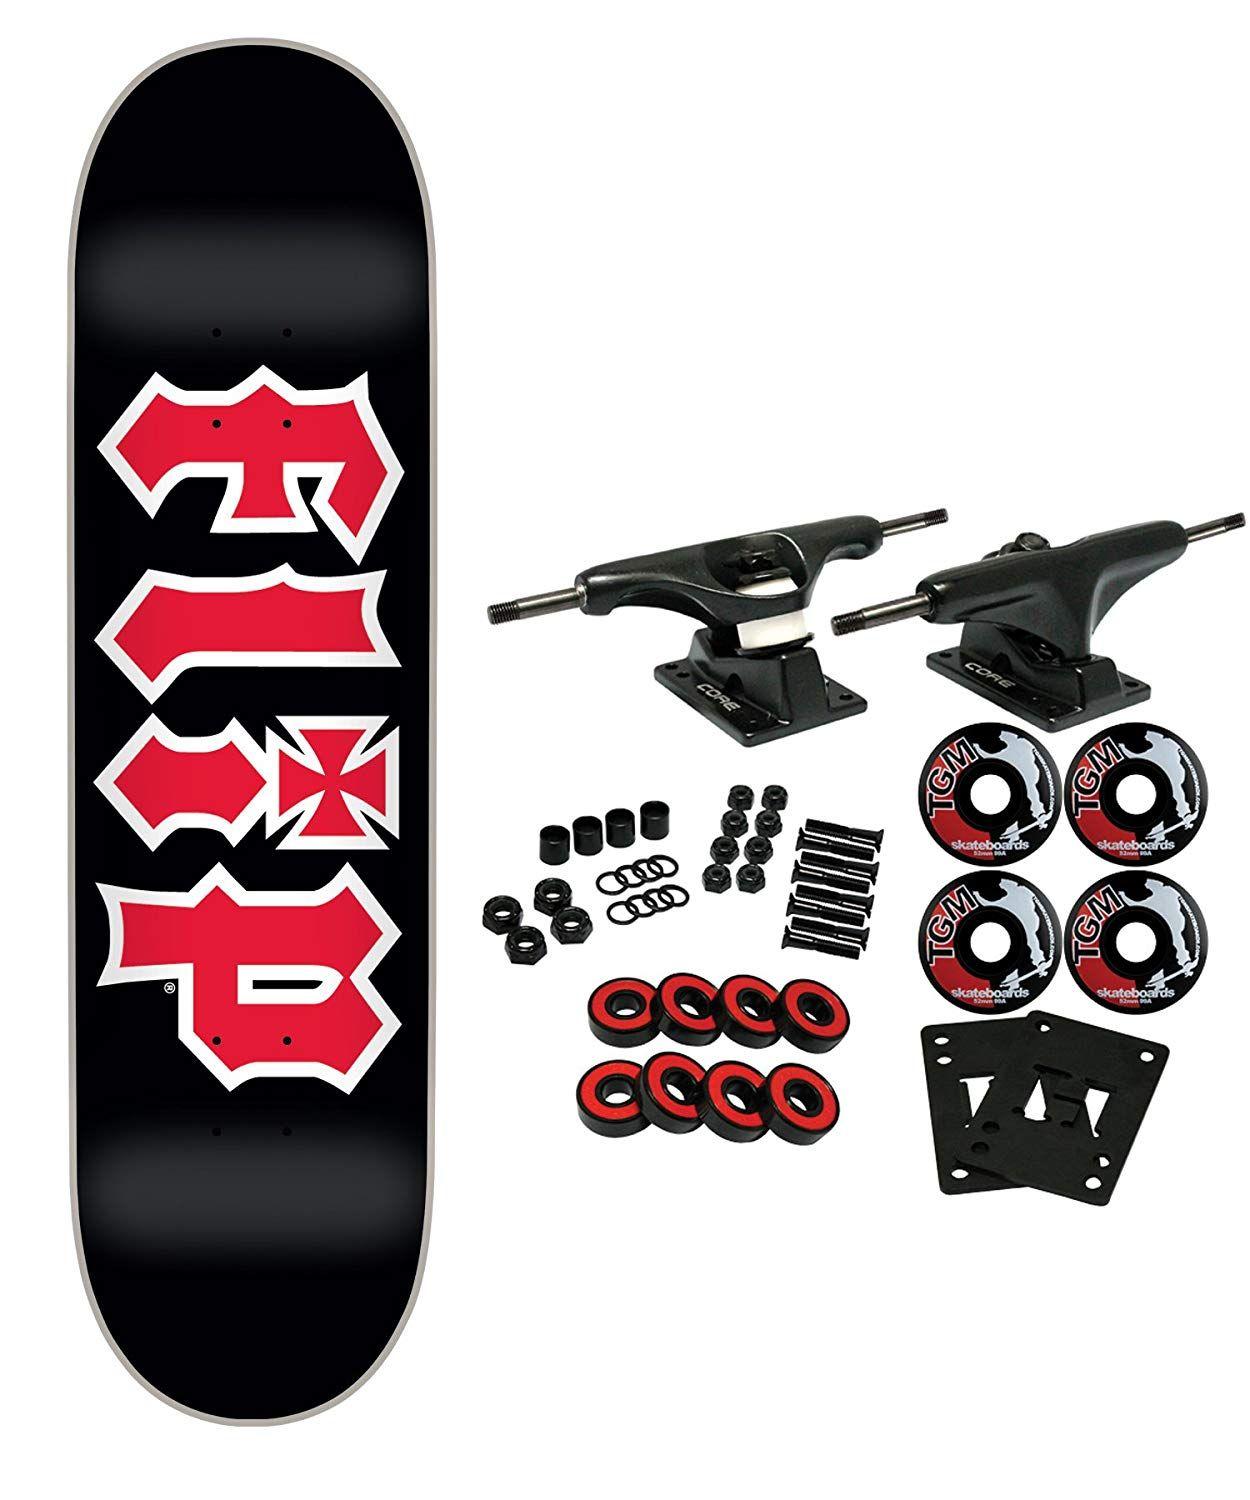 Flip Skateboard Logo - Amazon.com : Flip Skateboard Complete HKD Black 7.75